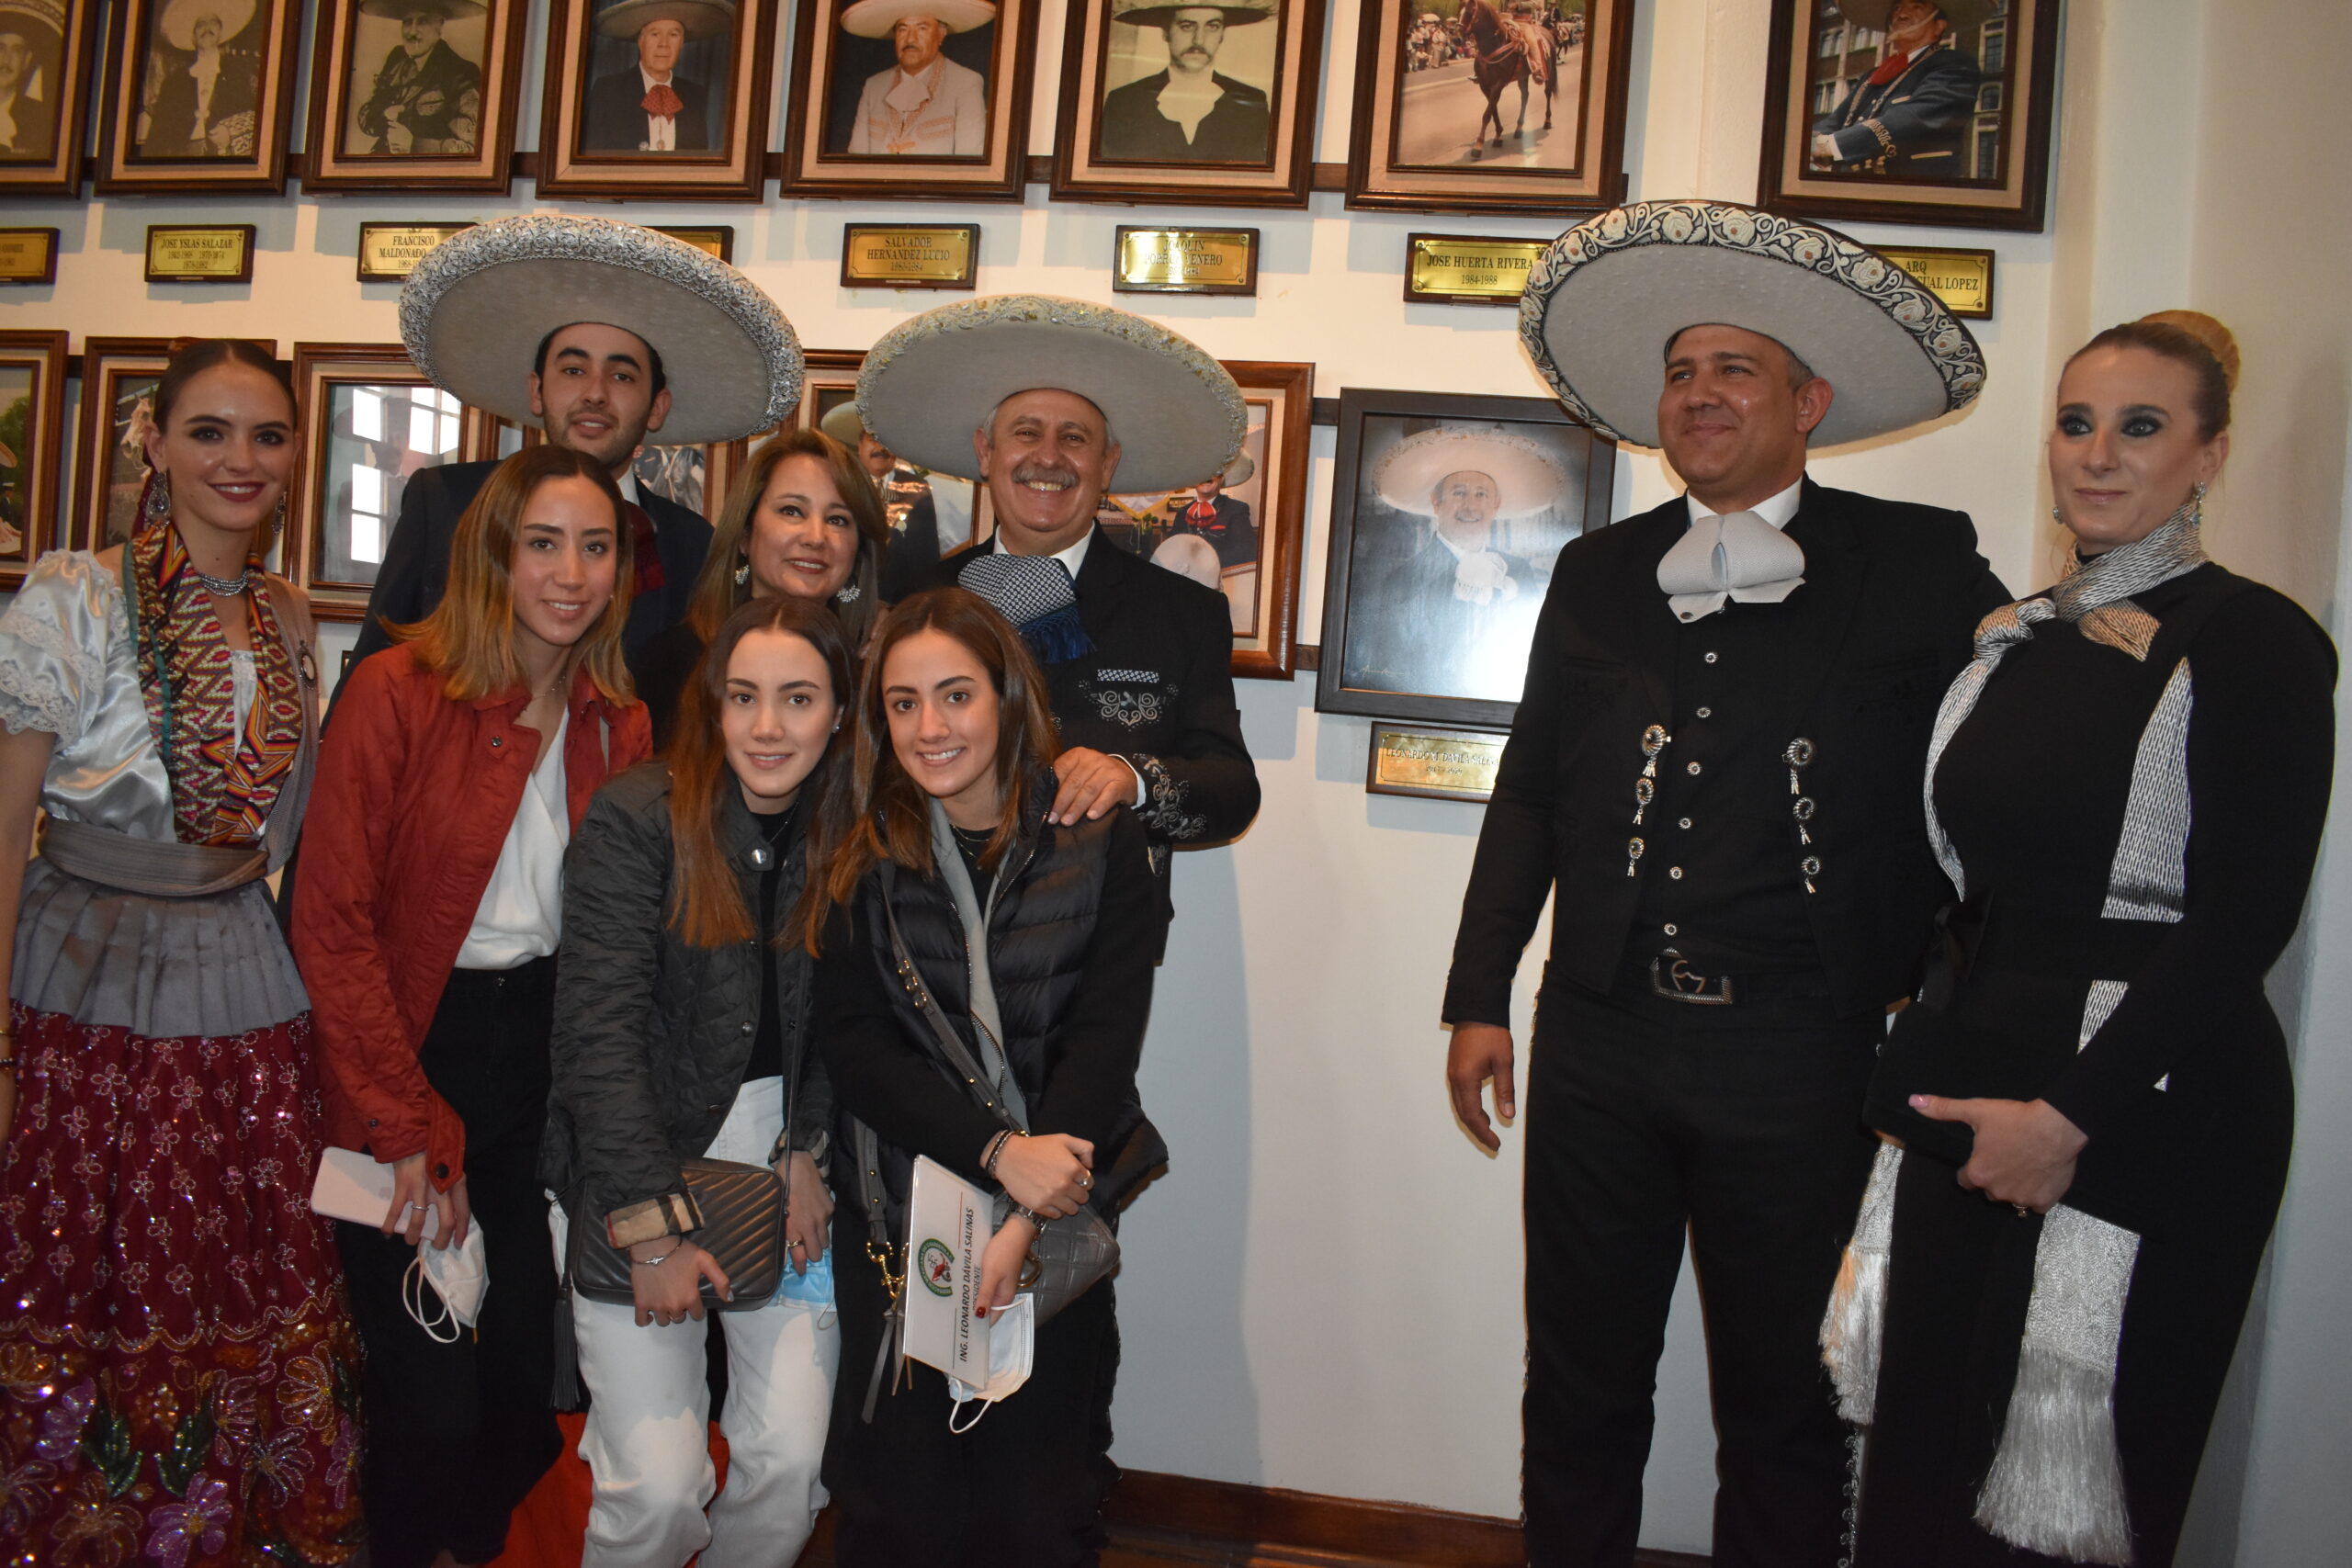 El ingeniero Leonardo Dávila Salinas acompañado por su familia, tras colocar su retrato en la Galería de Presidentes, primer acto celebrado por José Antonio Salcedo López como presidente de la Federación Mexicana de Charrería